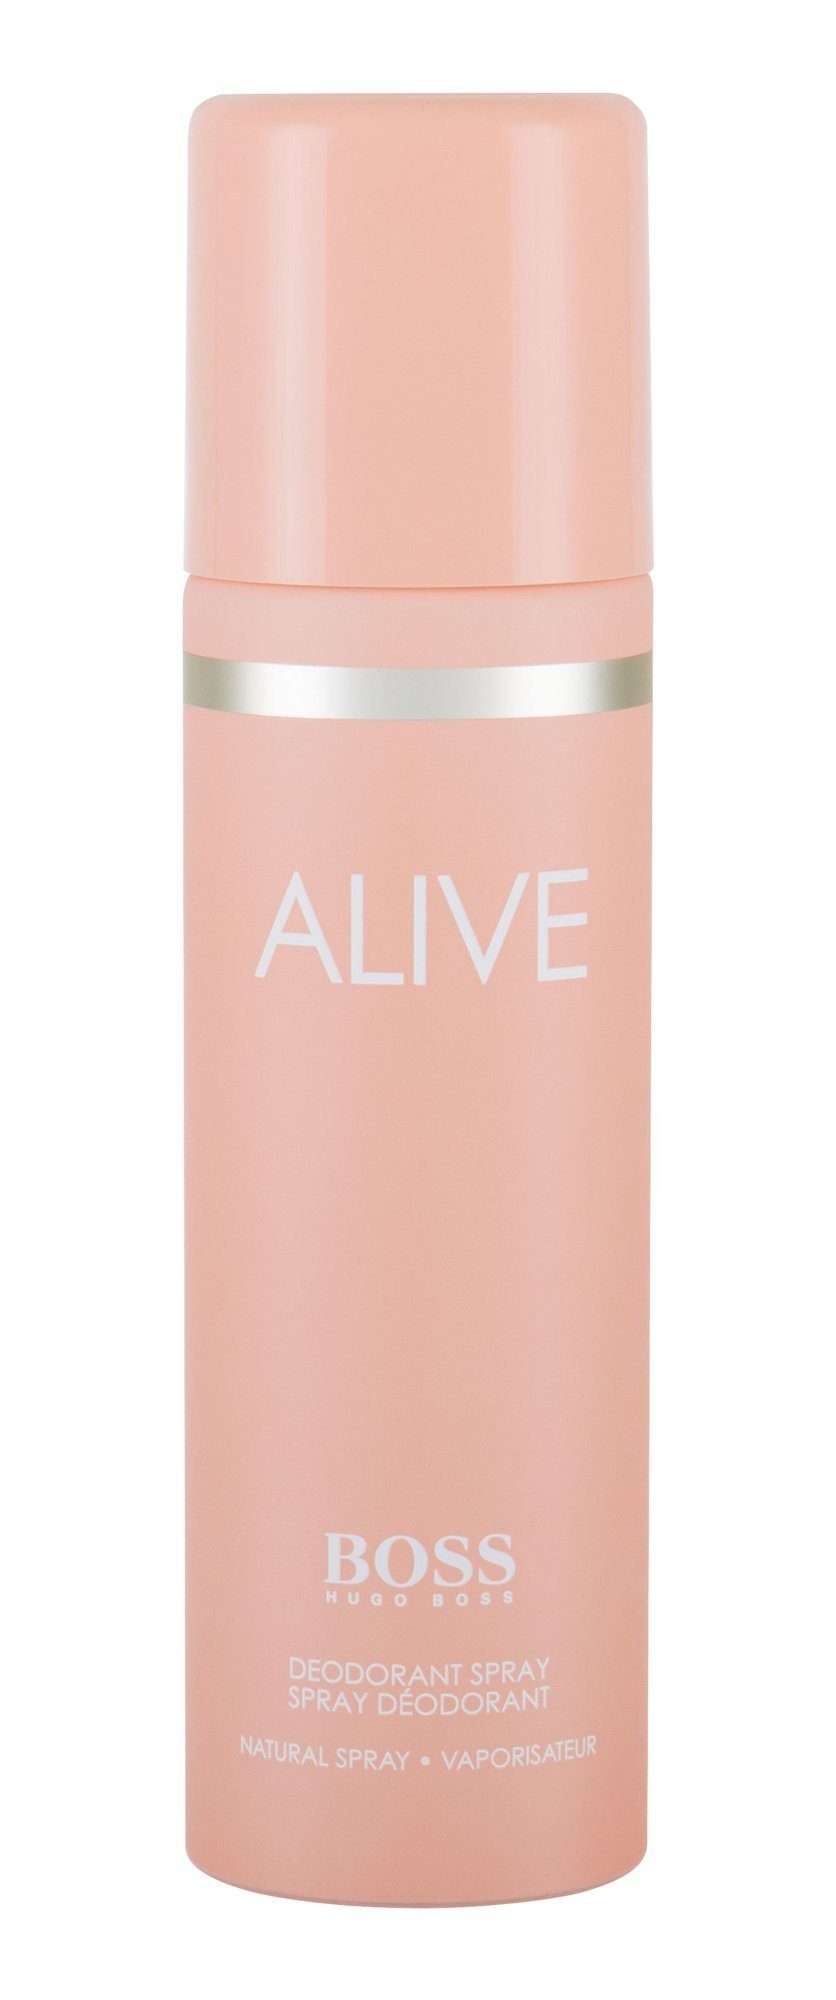 Boss Körperspray »Alive Deodorant« online kaufen | OTTO